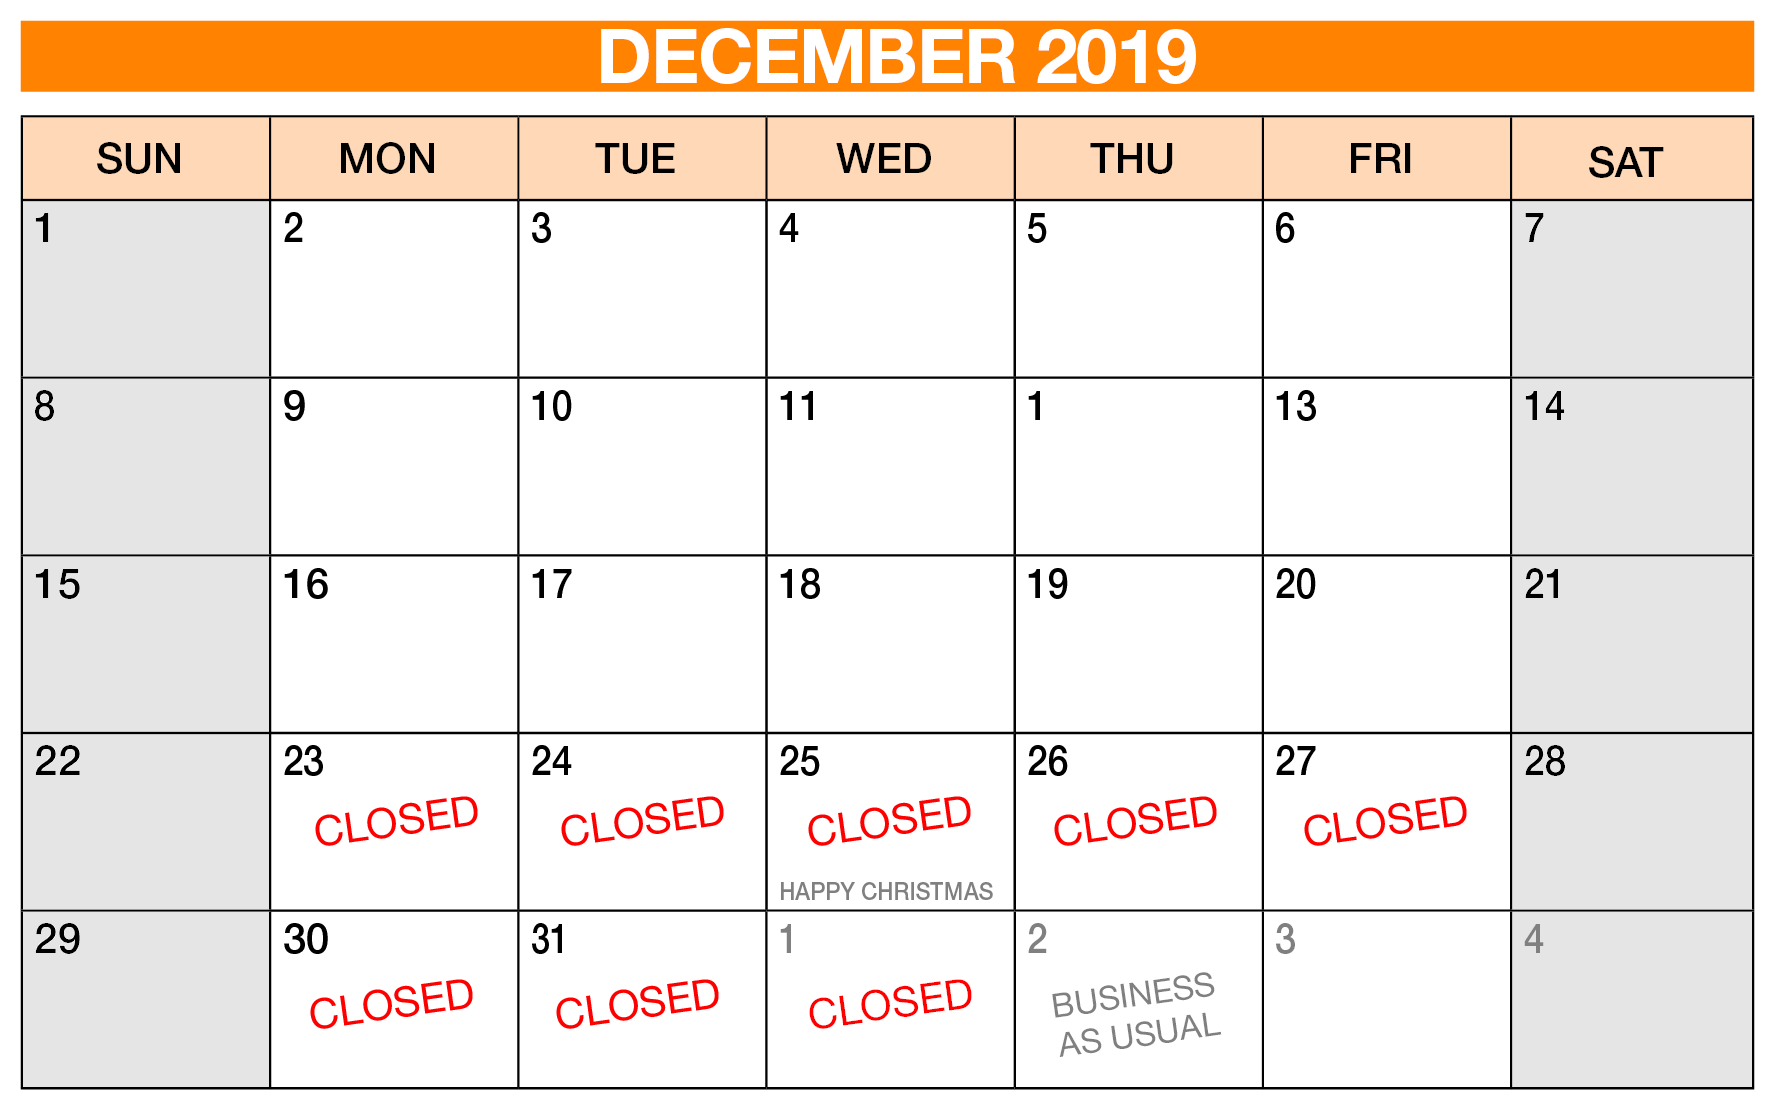 Winter closure dates